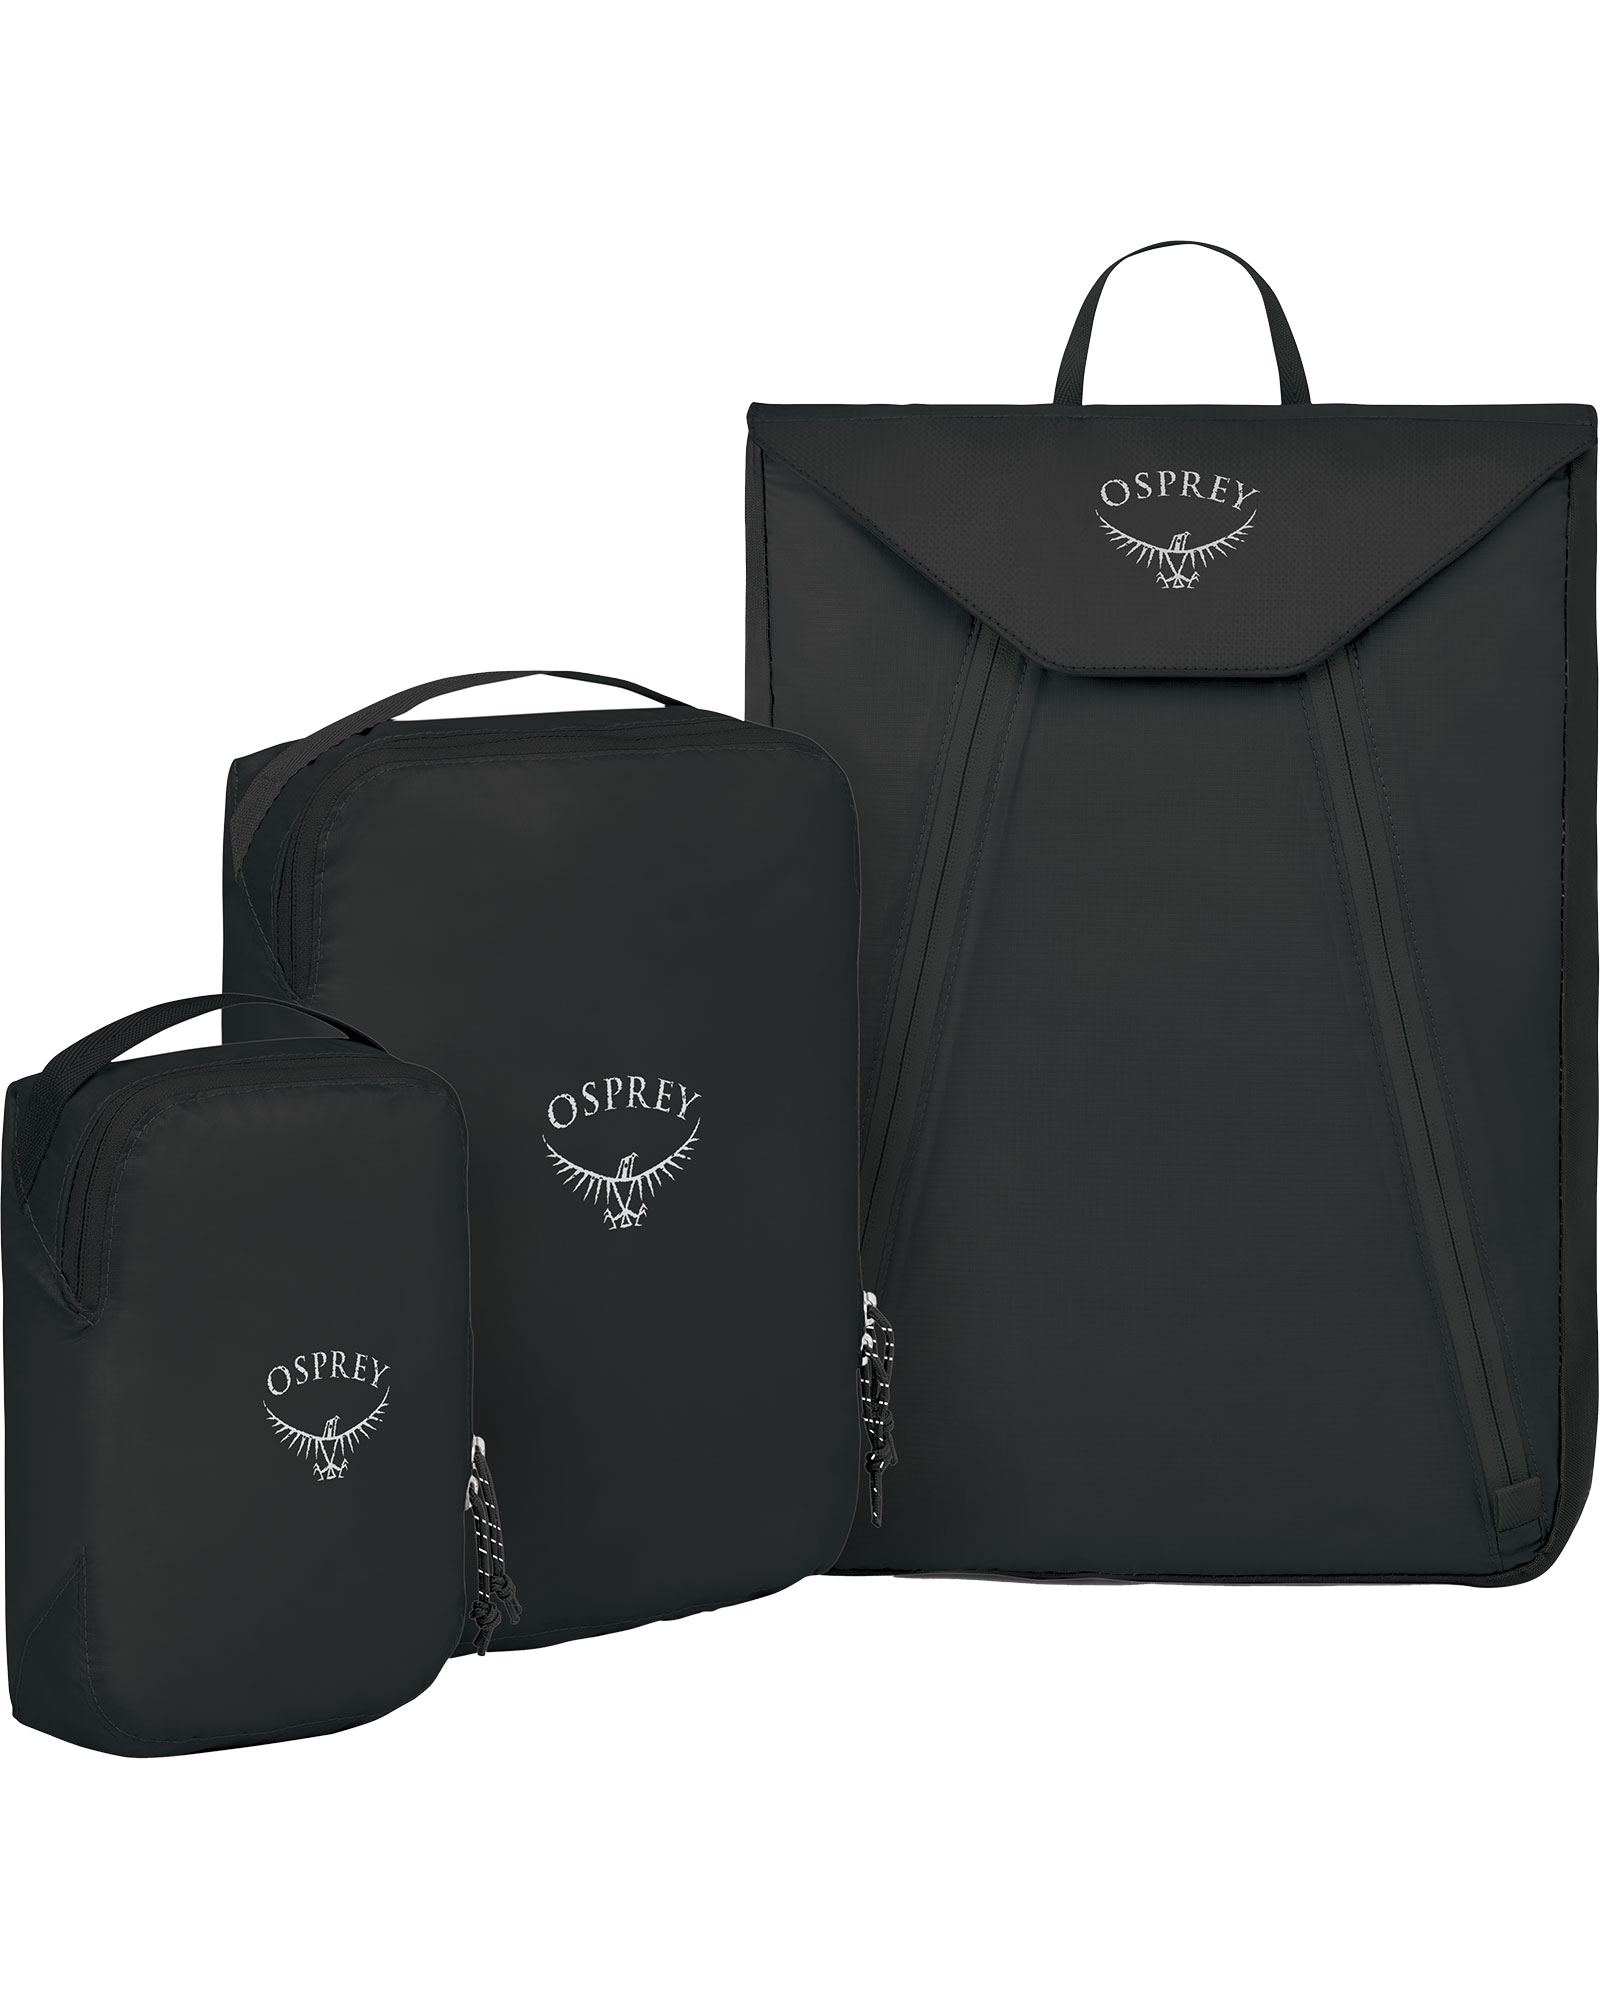 Osprey Ultralight Starter Set Packing Organiser - black